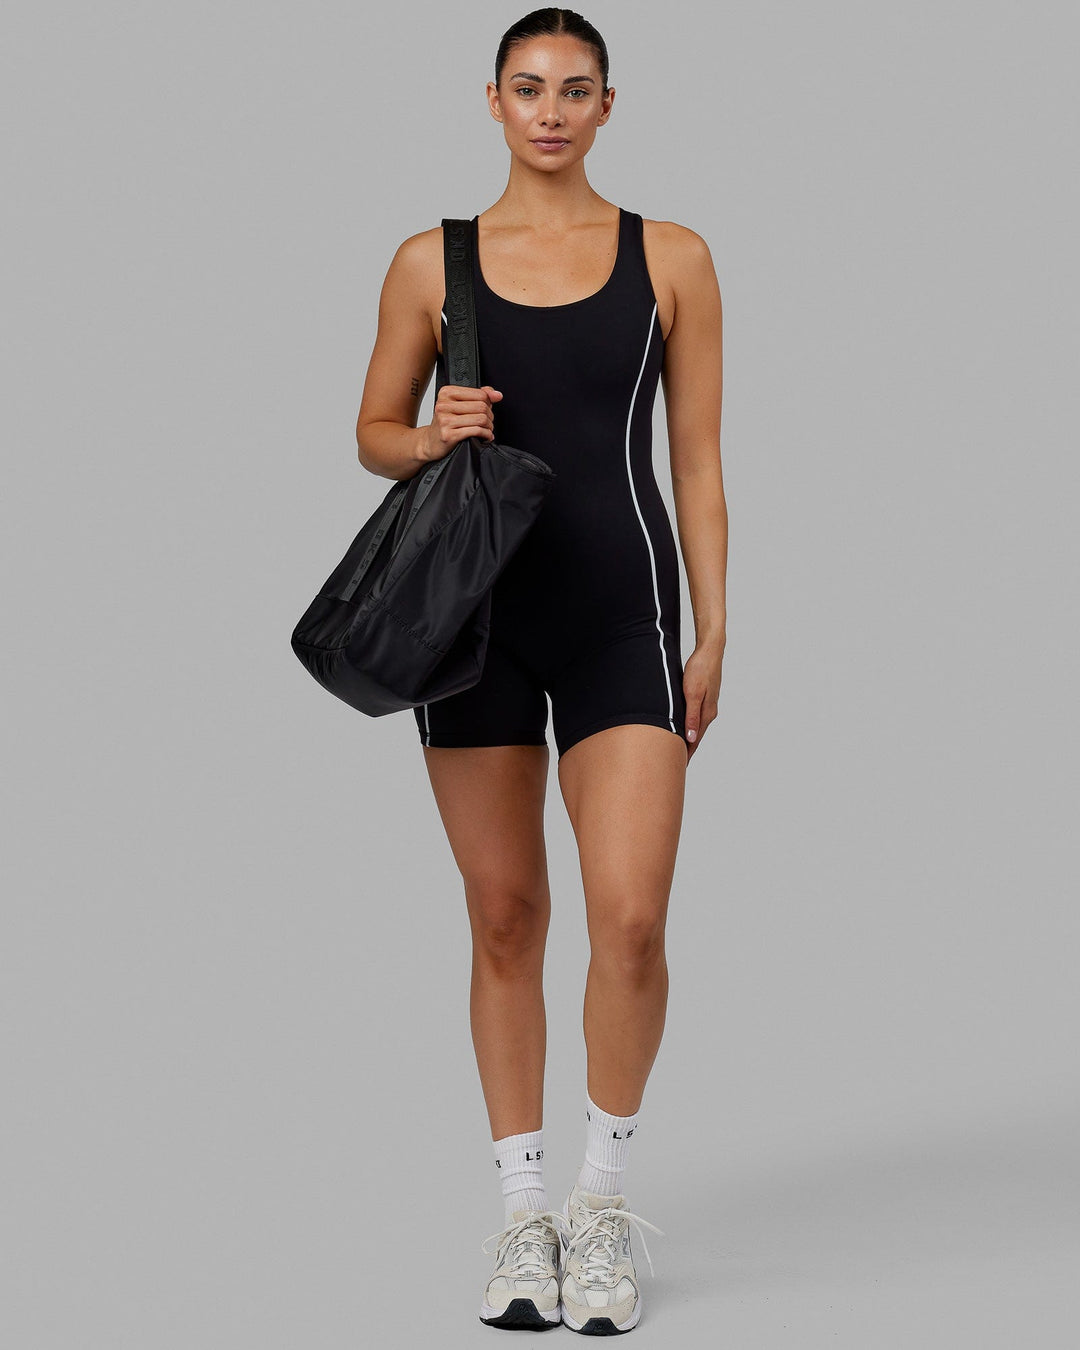 https://www.lskd.co/cdn/shop/files/Model-Technique-Bodysuit-Black-White-1.jpg?v=1702857763&width=1080